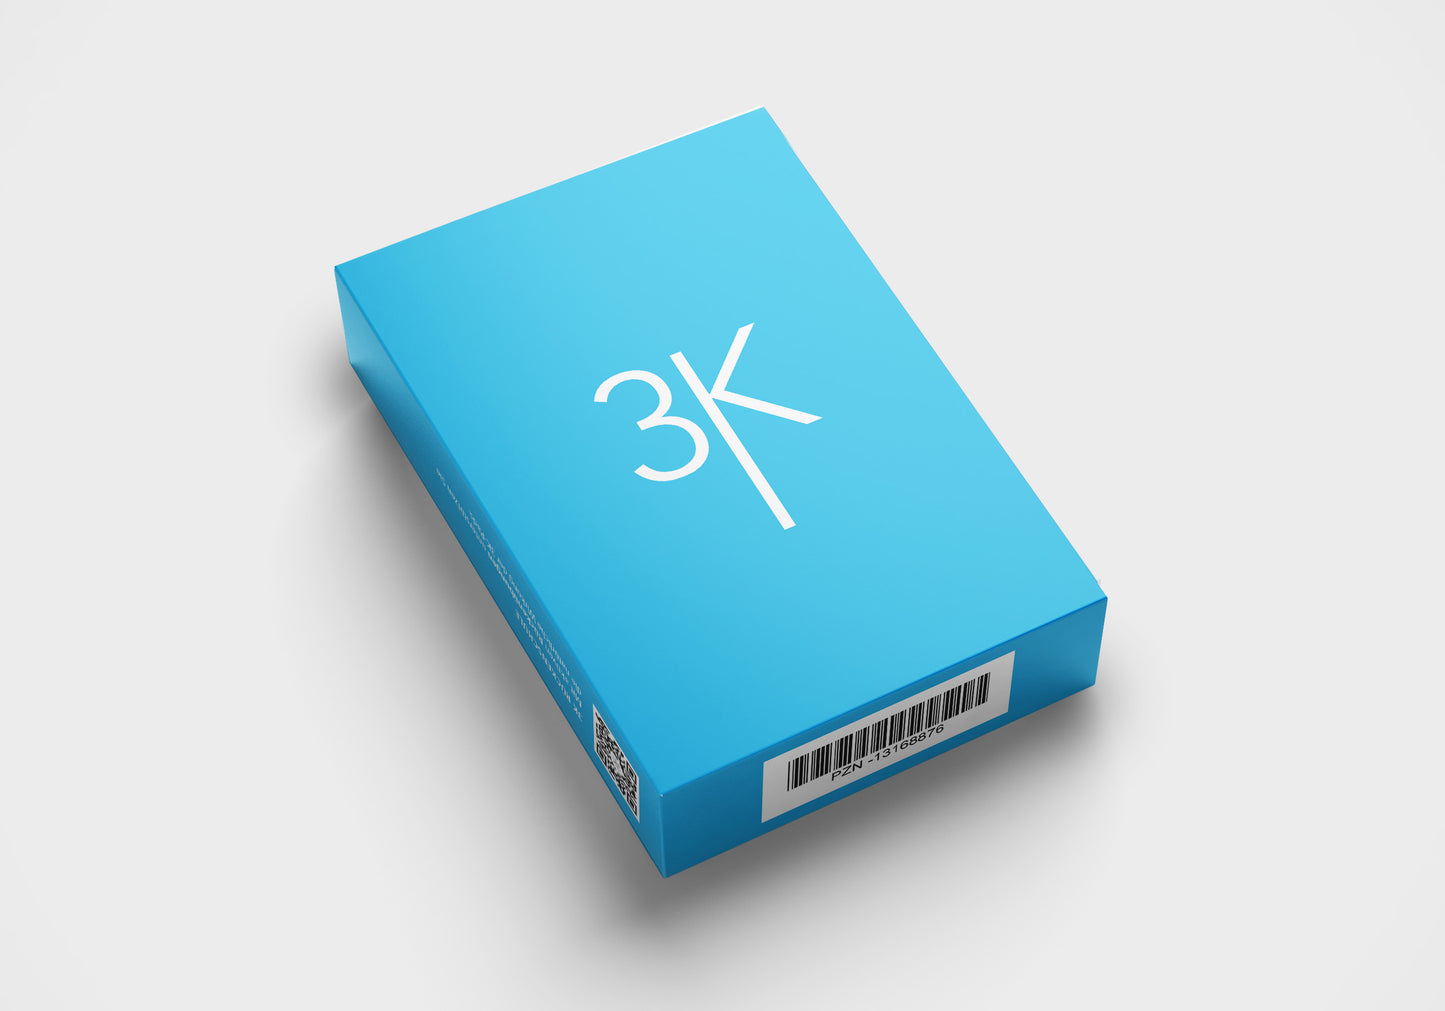 3K-Pads 3er Verpackung. Hilfsmittel gegen Rückenbeschwerden in hochwertiger, umweltschonender Verpackung. Blaue Verpackung mit weißem Logo.